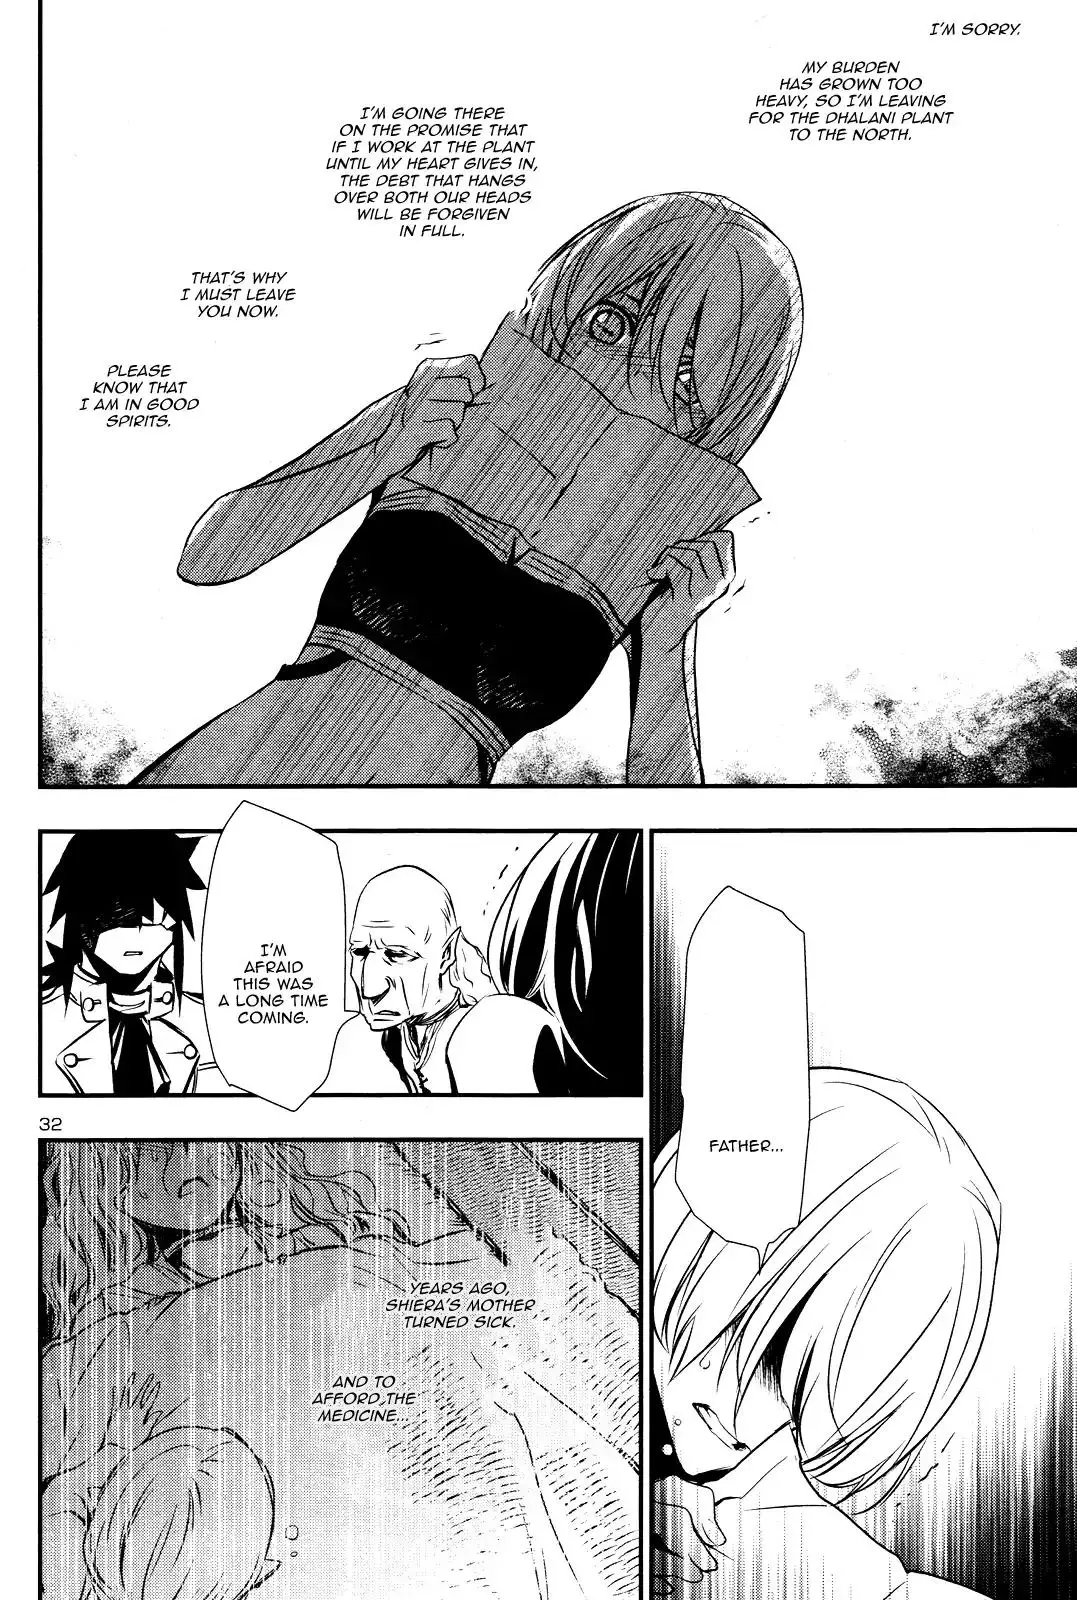 Shinju no Nectar - 14 page 31